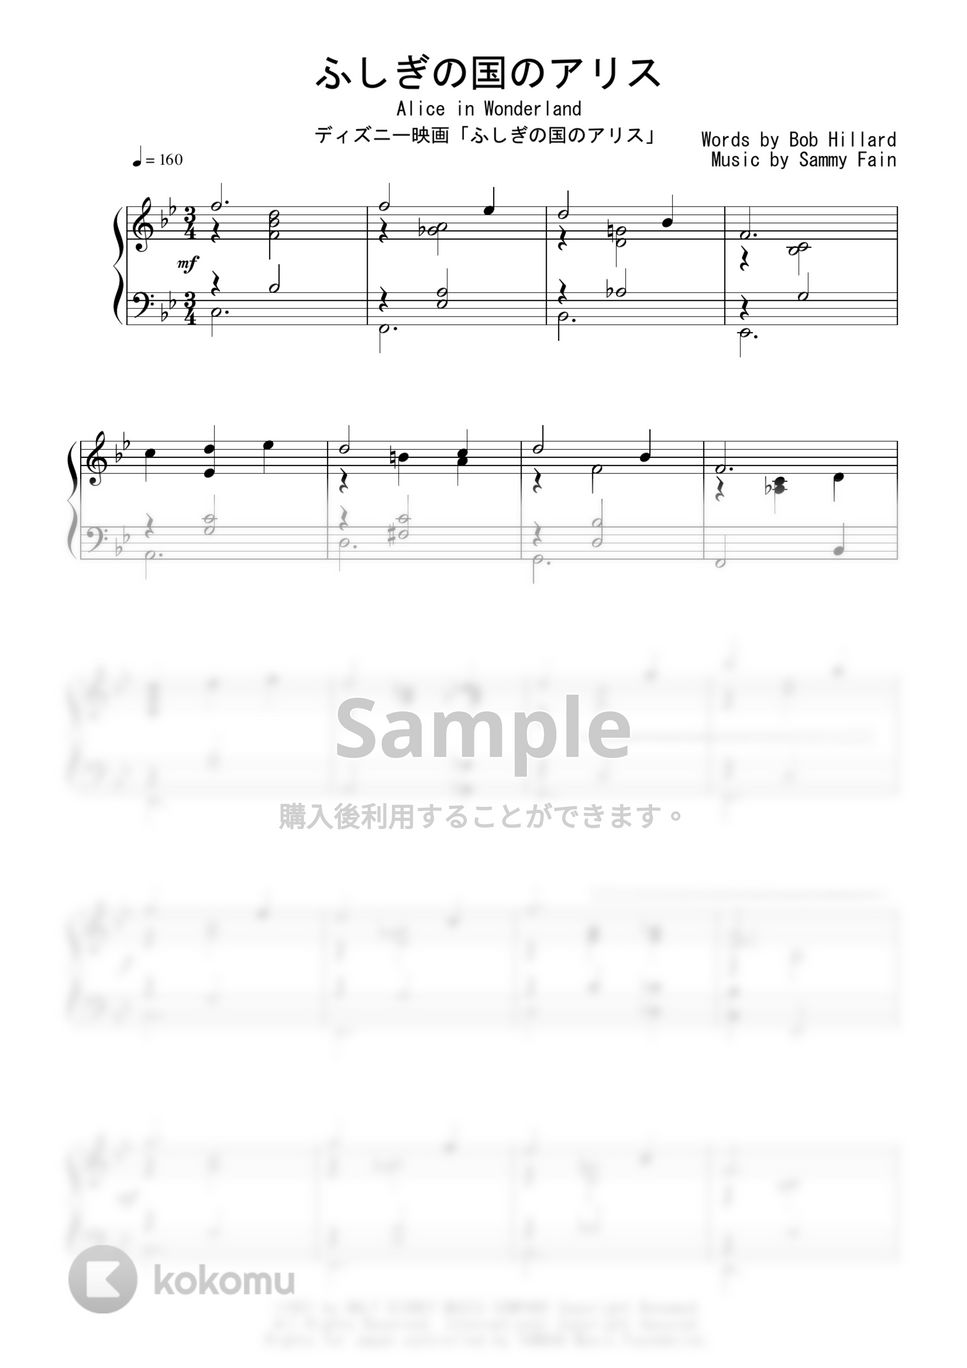 ディズニー映画『ふしぎの国のアリス』OST - ふしぎの国のアリス (Jazz Ver.) by Peony